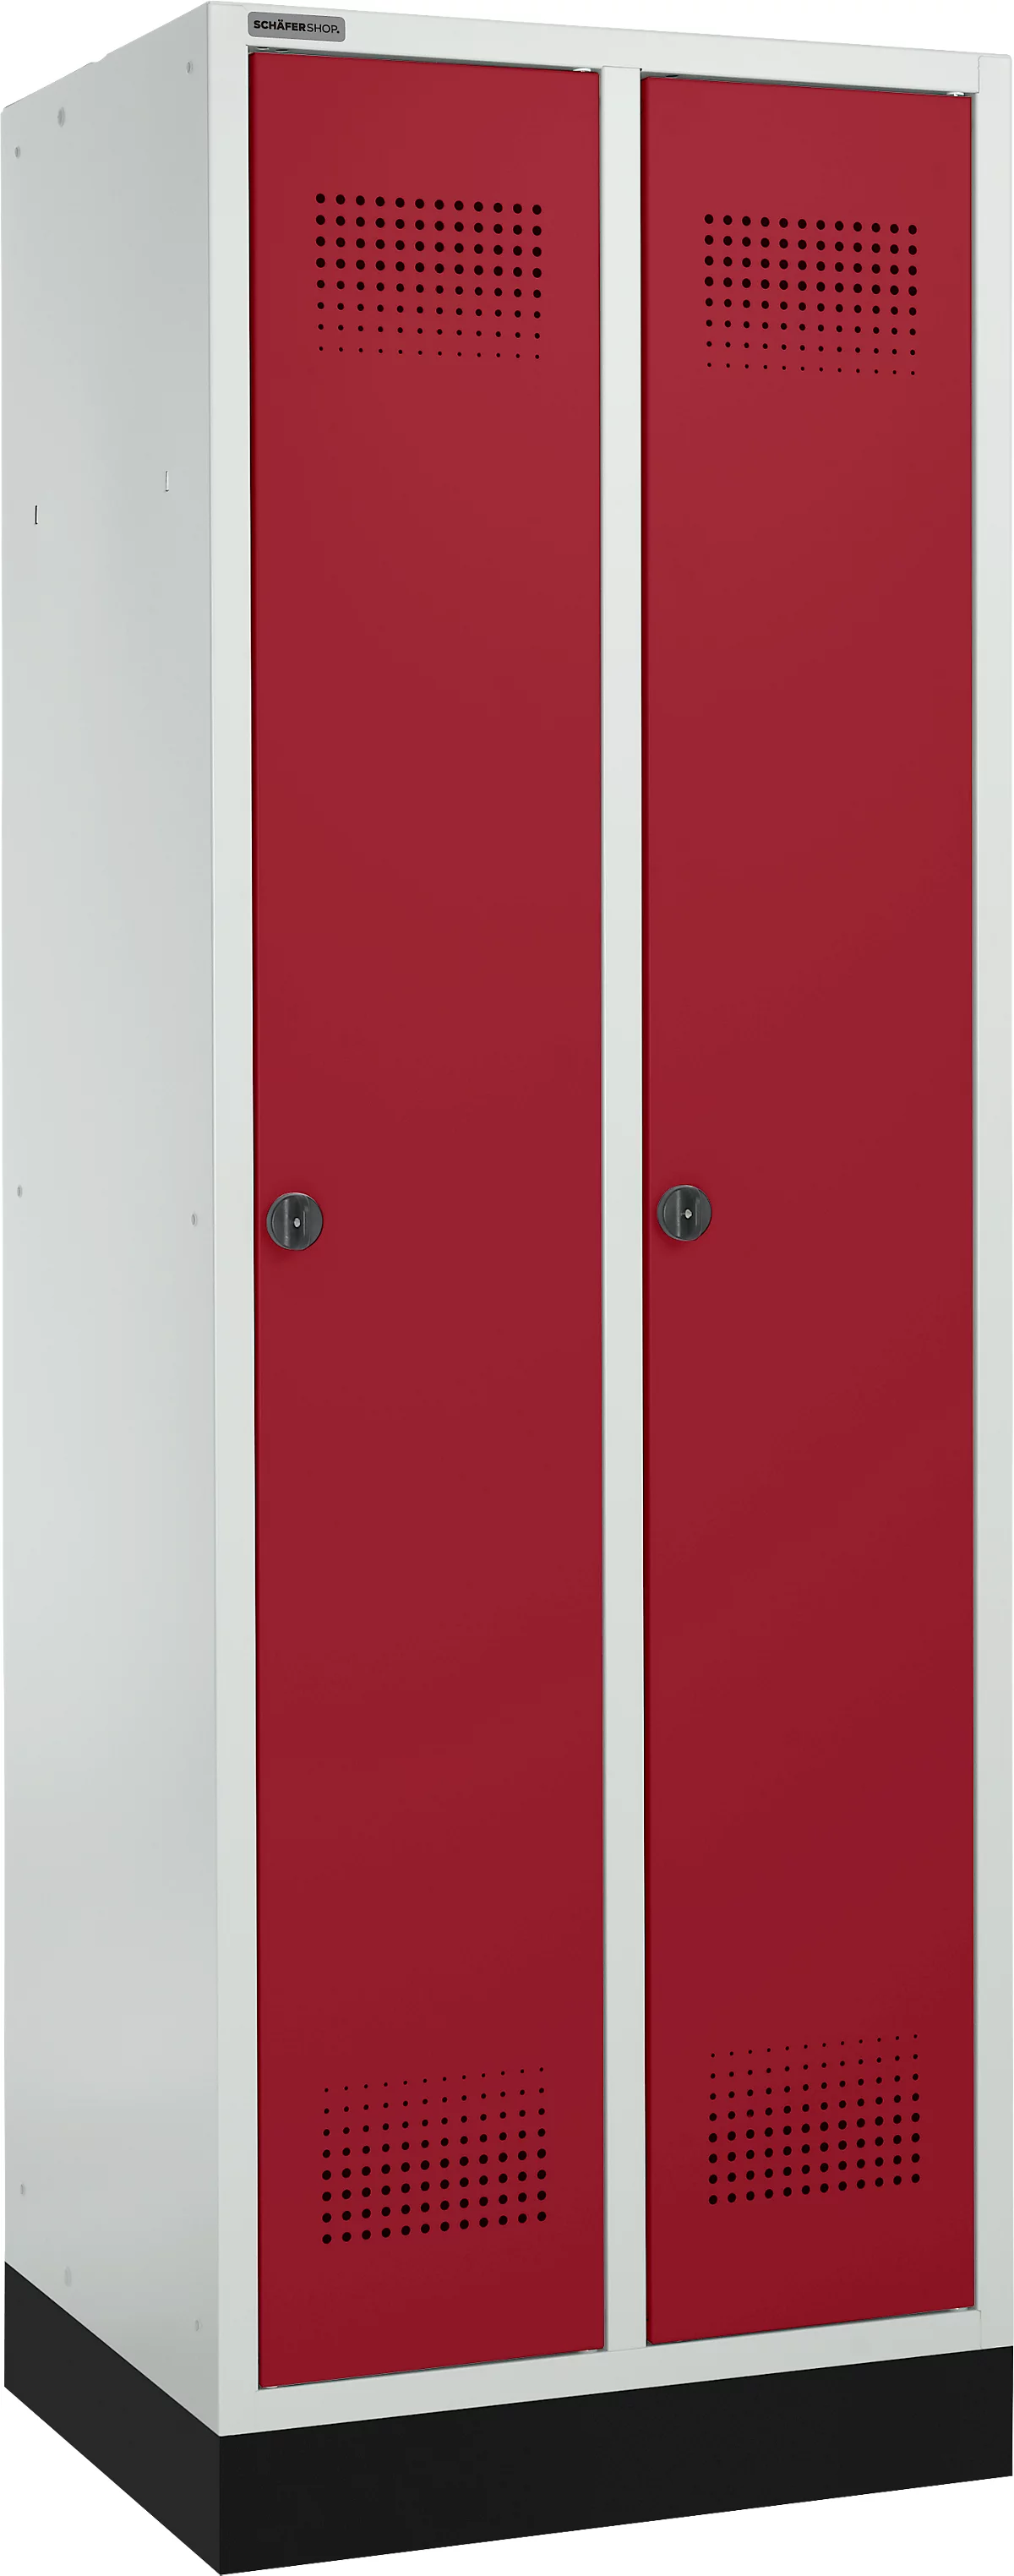 Schäfer Shop Genius Taquilla con zócalo, 2 compartimentos, anchura compartimento 300 mm, cierre de pasador giratorio de seguridad, gris luminoso/rojo rubí